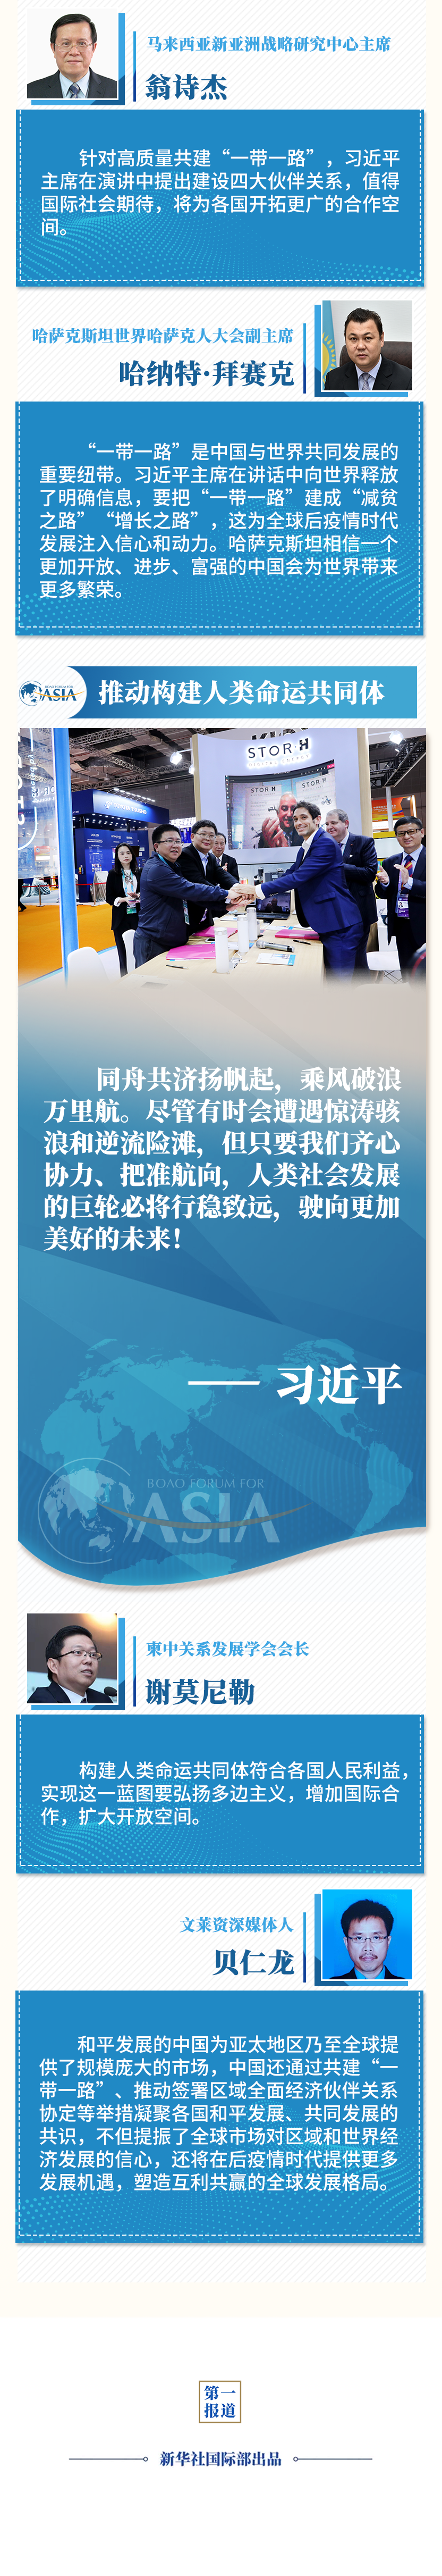 国务院新闻办公室将公布《中国的民主化》白皮书